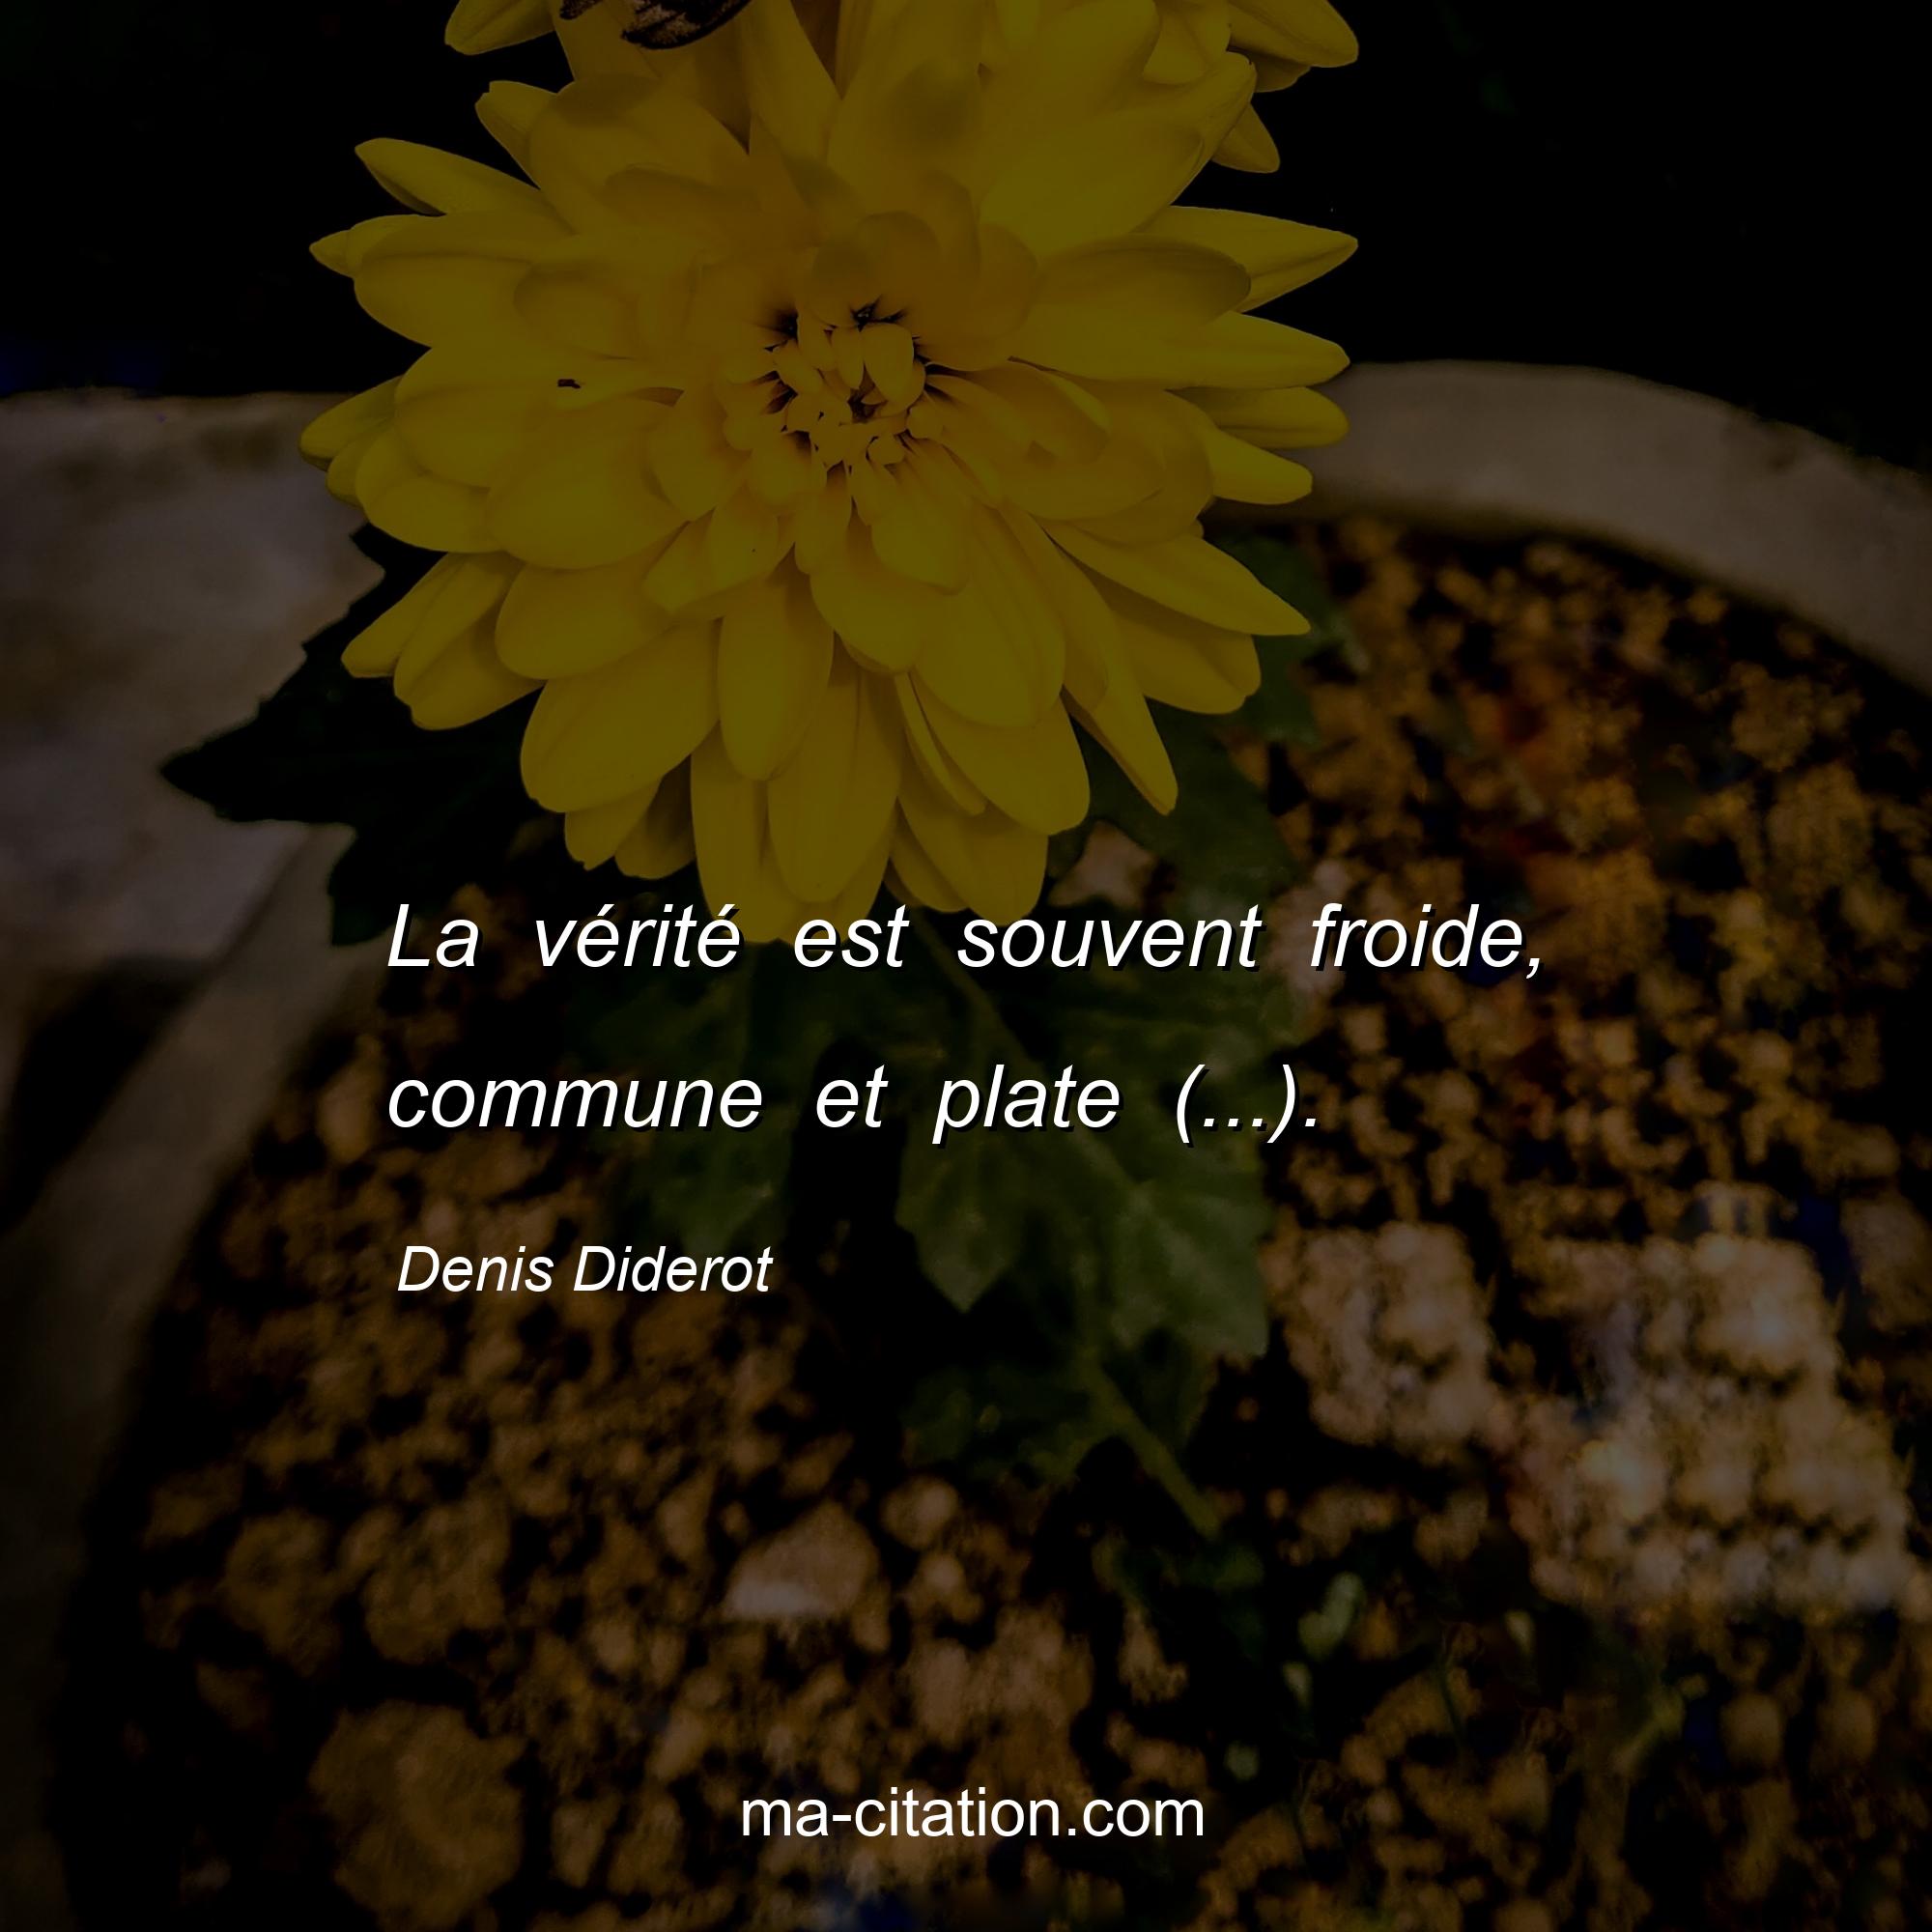 Denis Diderot : La vérité est souvent froide, commune et plate (...).